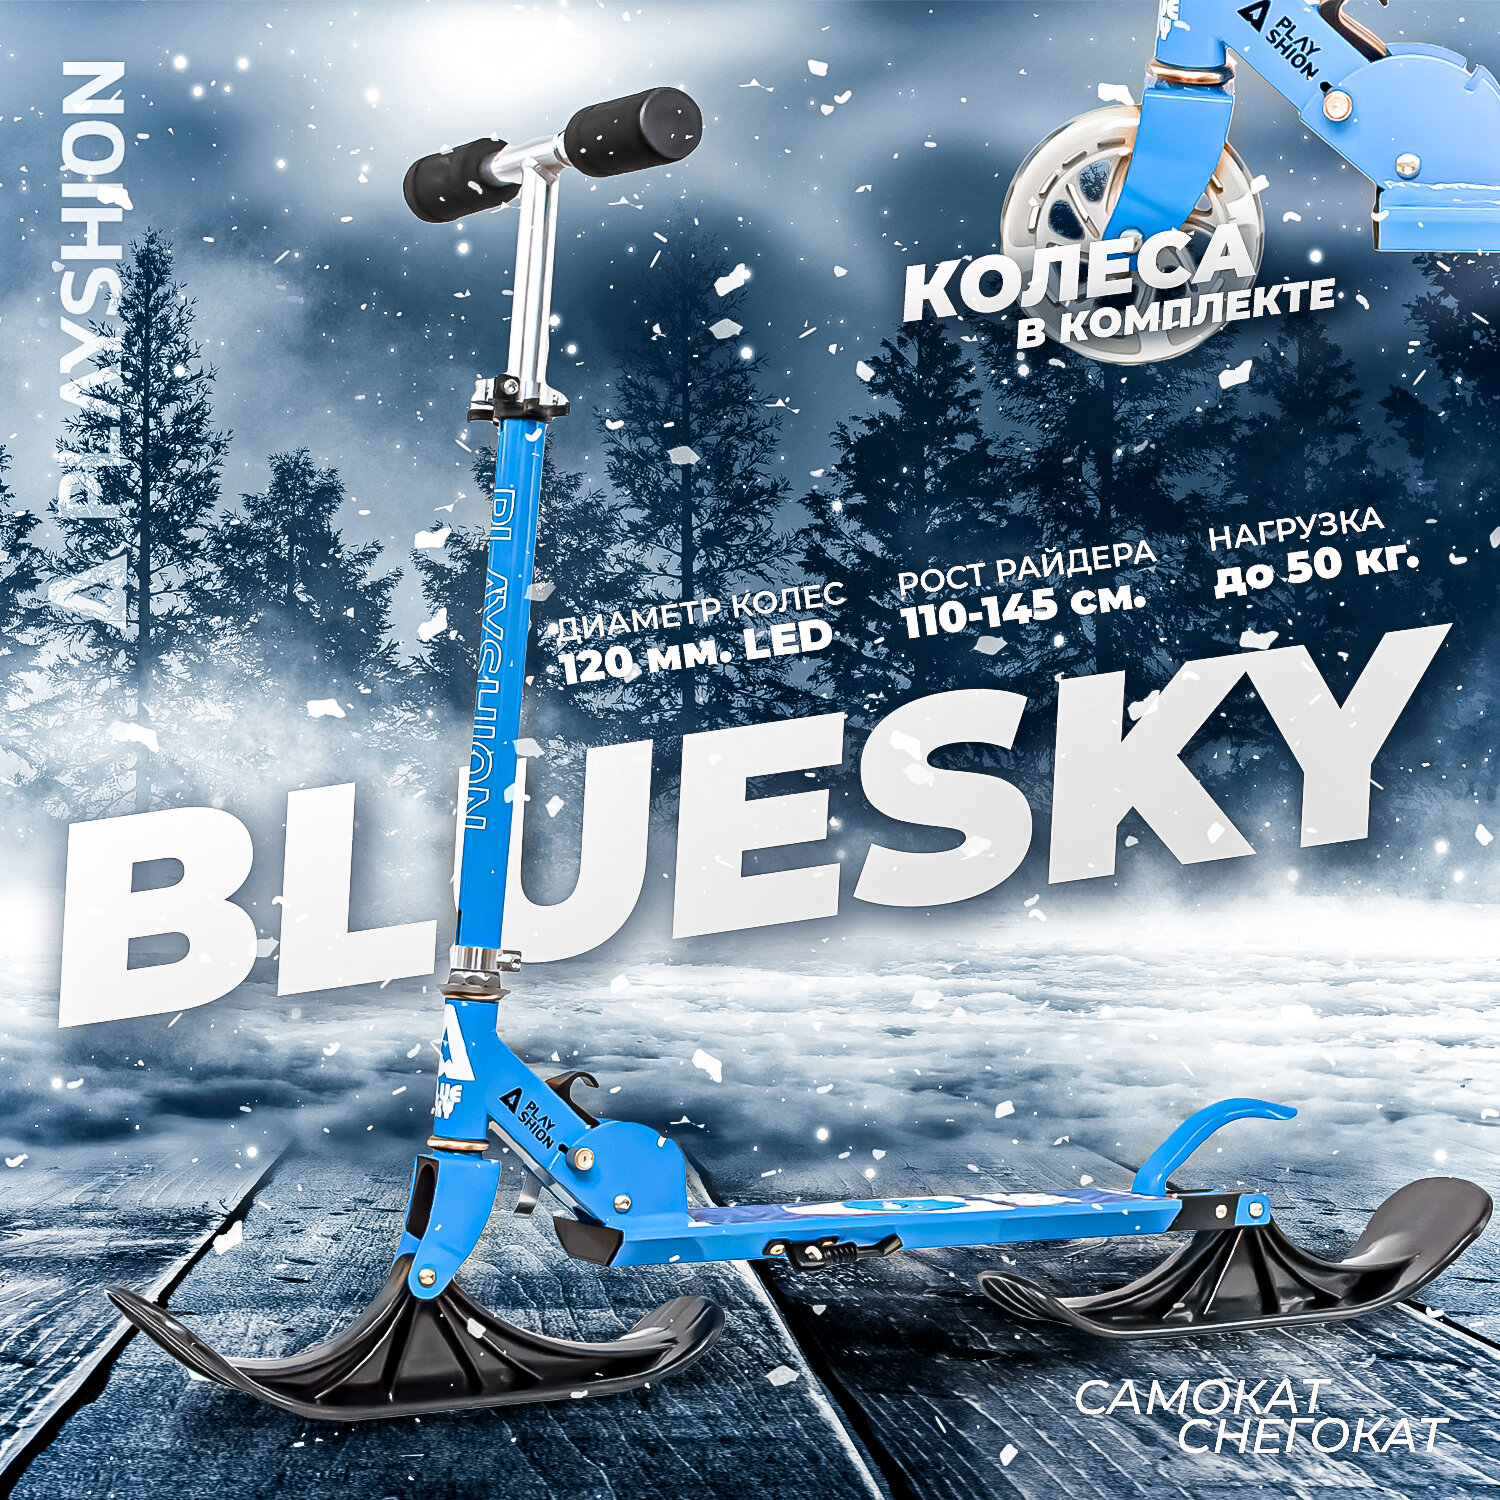 Самокат-снегокат PLAYSHION BLUESKY PIC, голубой